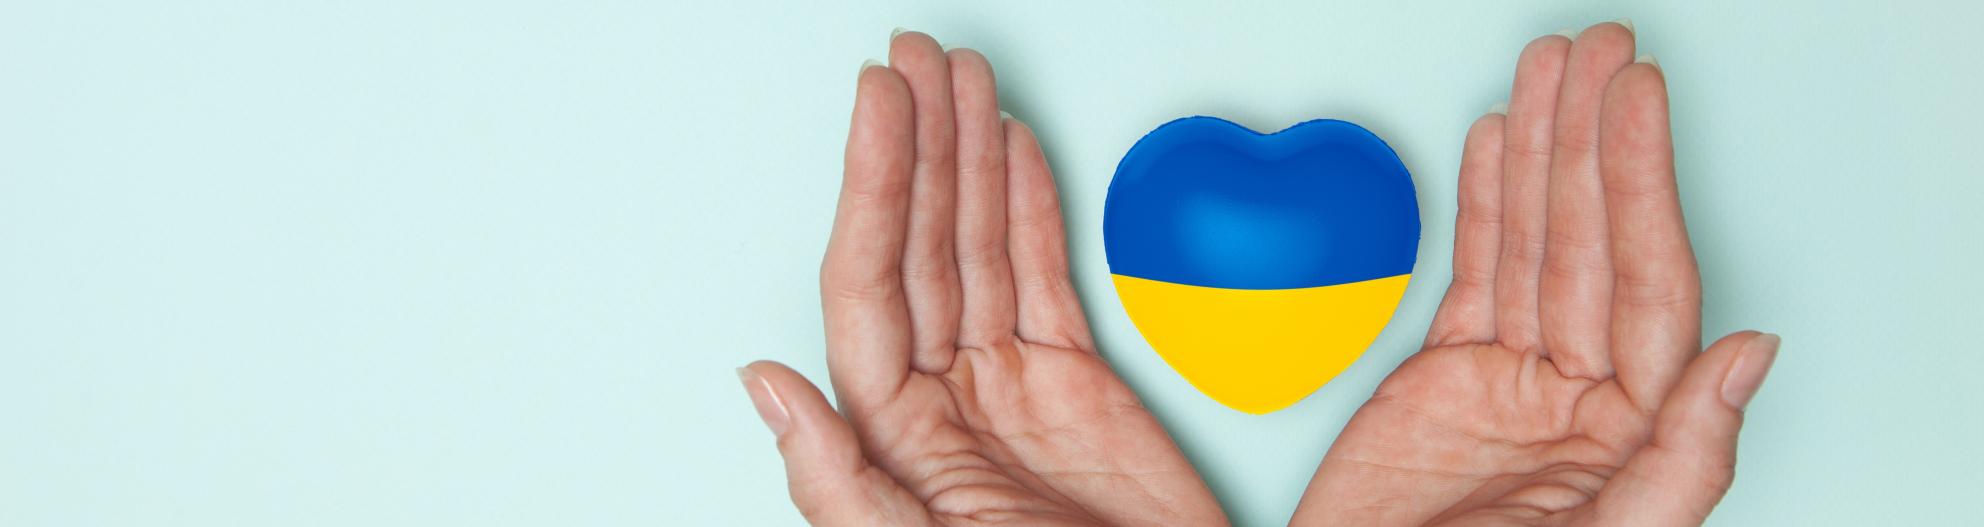 Ukrainan väreissä oleva sydän henkilön käsien välissä